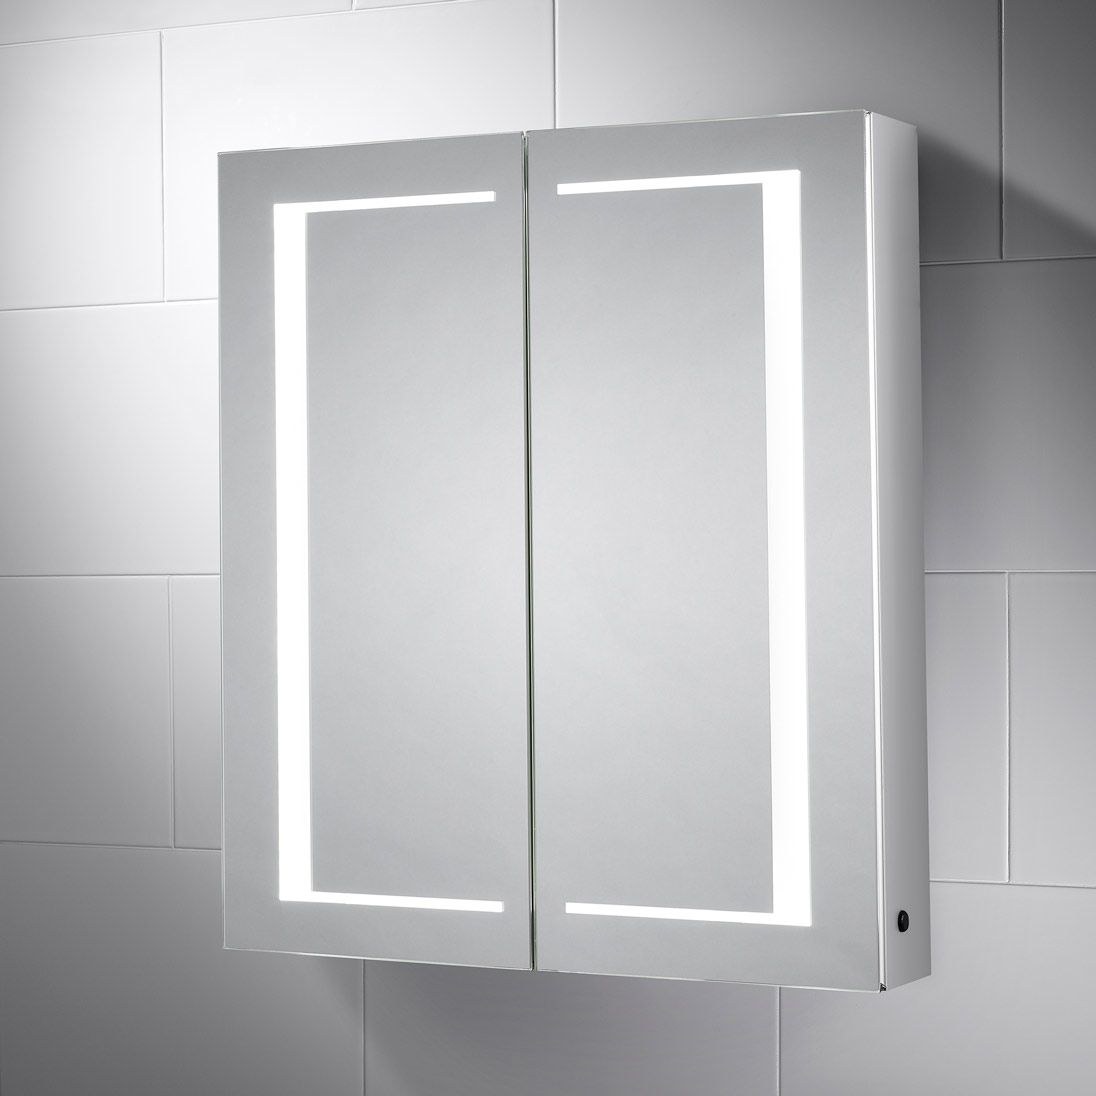 Шкаф с зеркалом для ванной комнаты навесной. Зеркальный шкаф Nova 90. Шкафчик с подсветкой в ванную. Зеркальный шкаф для ванной с подсветкой. Зеркало в ванную с подсветкой и шкафчиком.